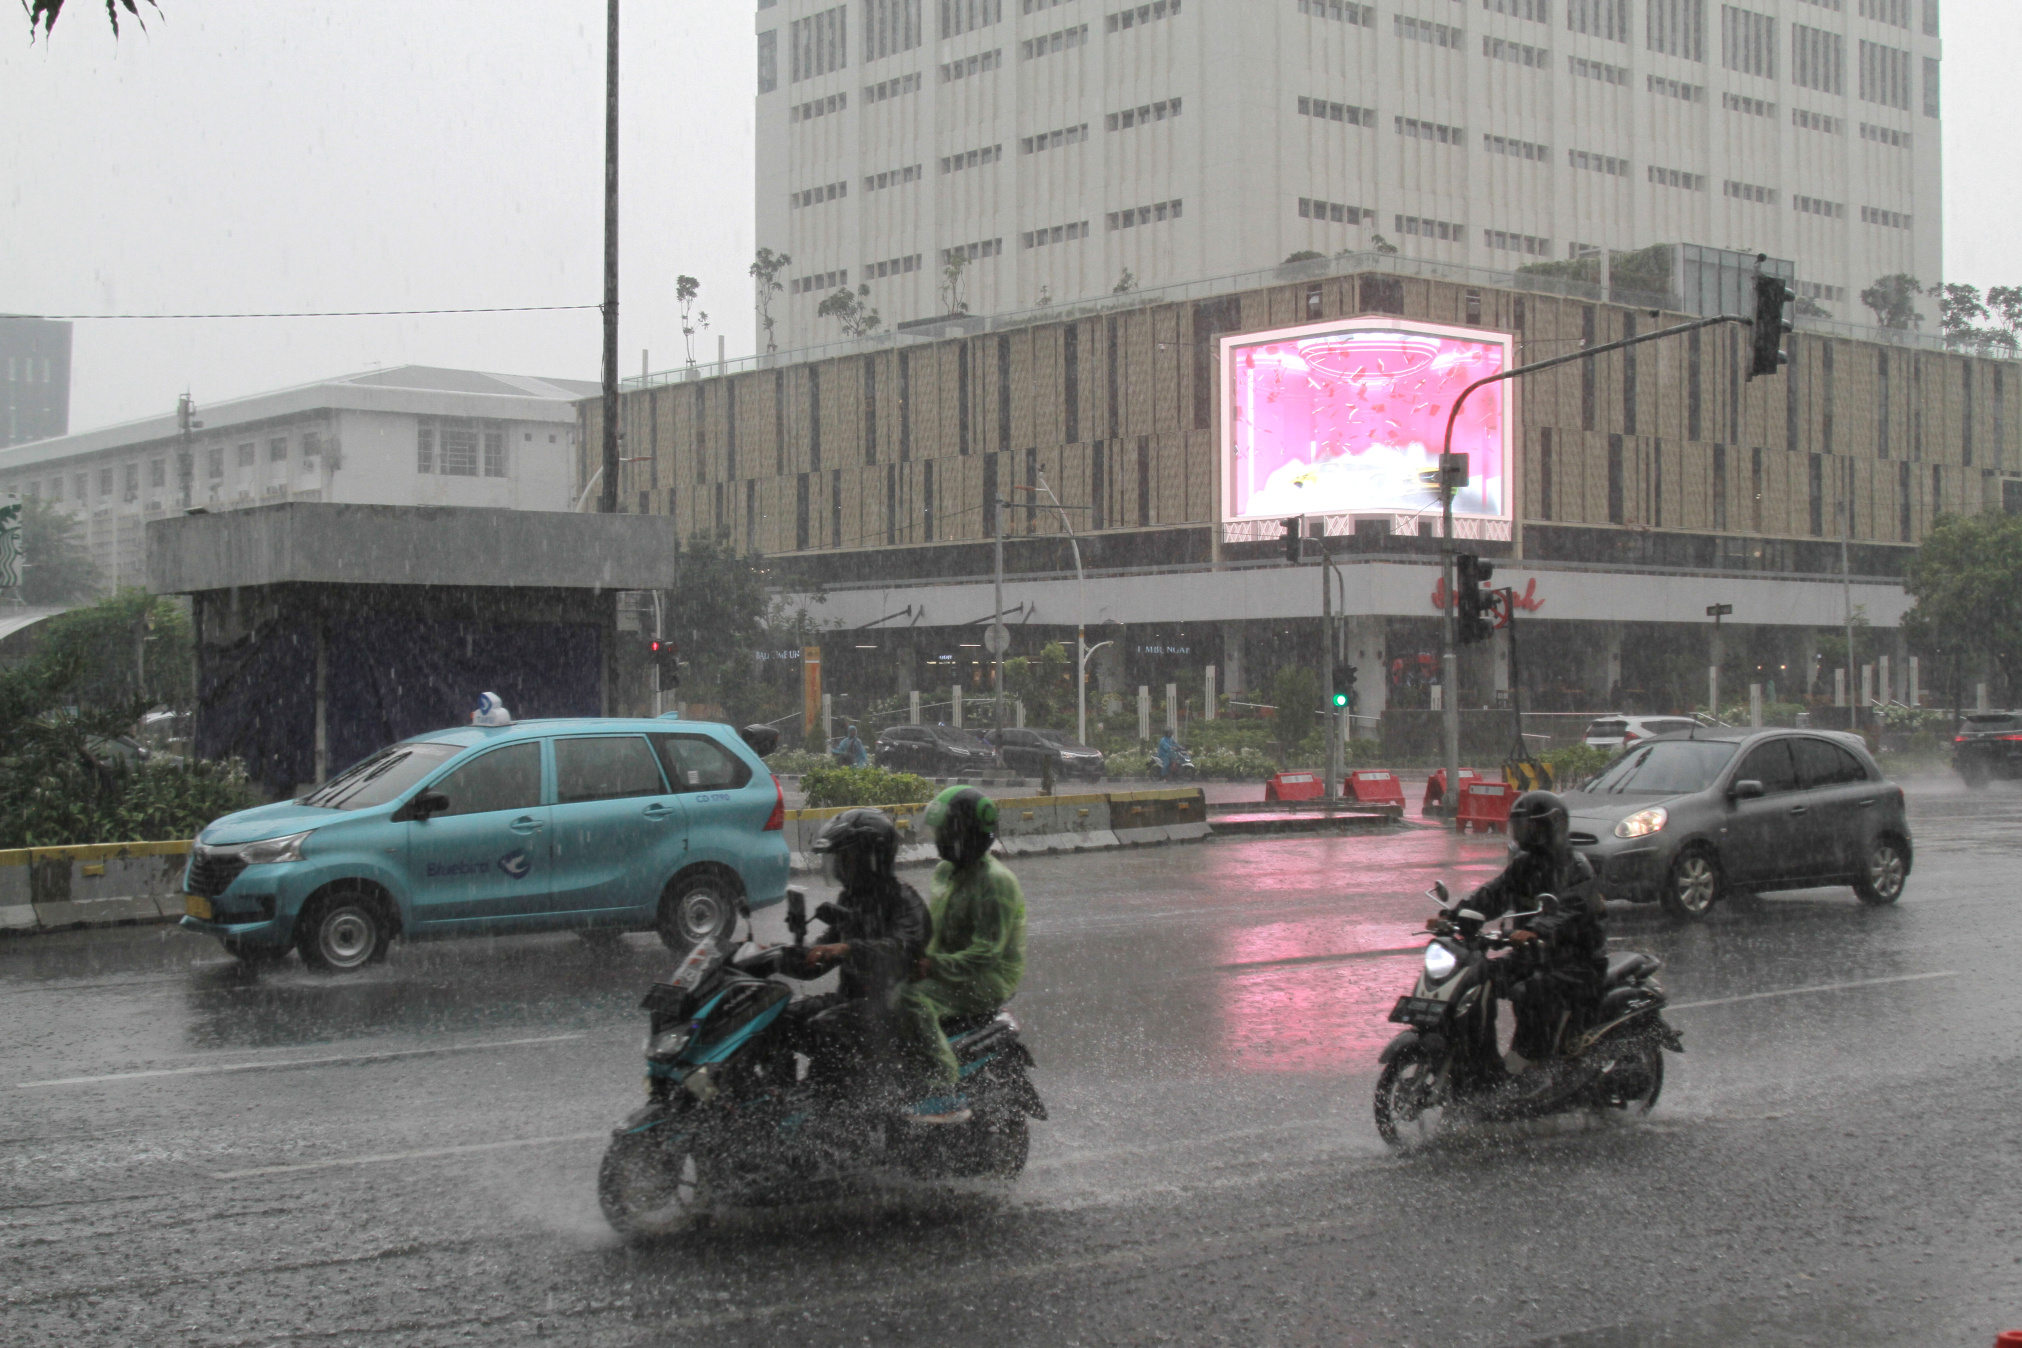 Jakarta mulai memasuki musim hujan menurut perkiraan BMKG musim hujan pada bulan kedua Oktober (Ashar/SinPo.id)